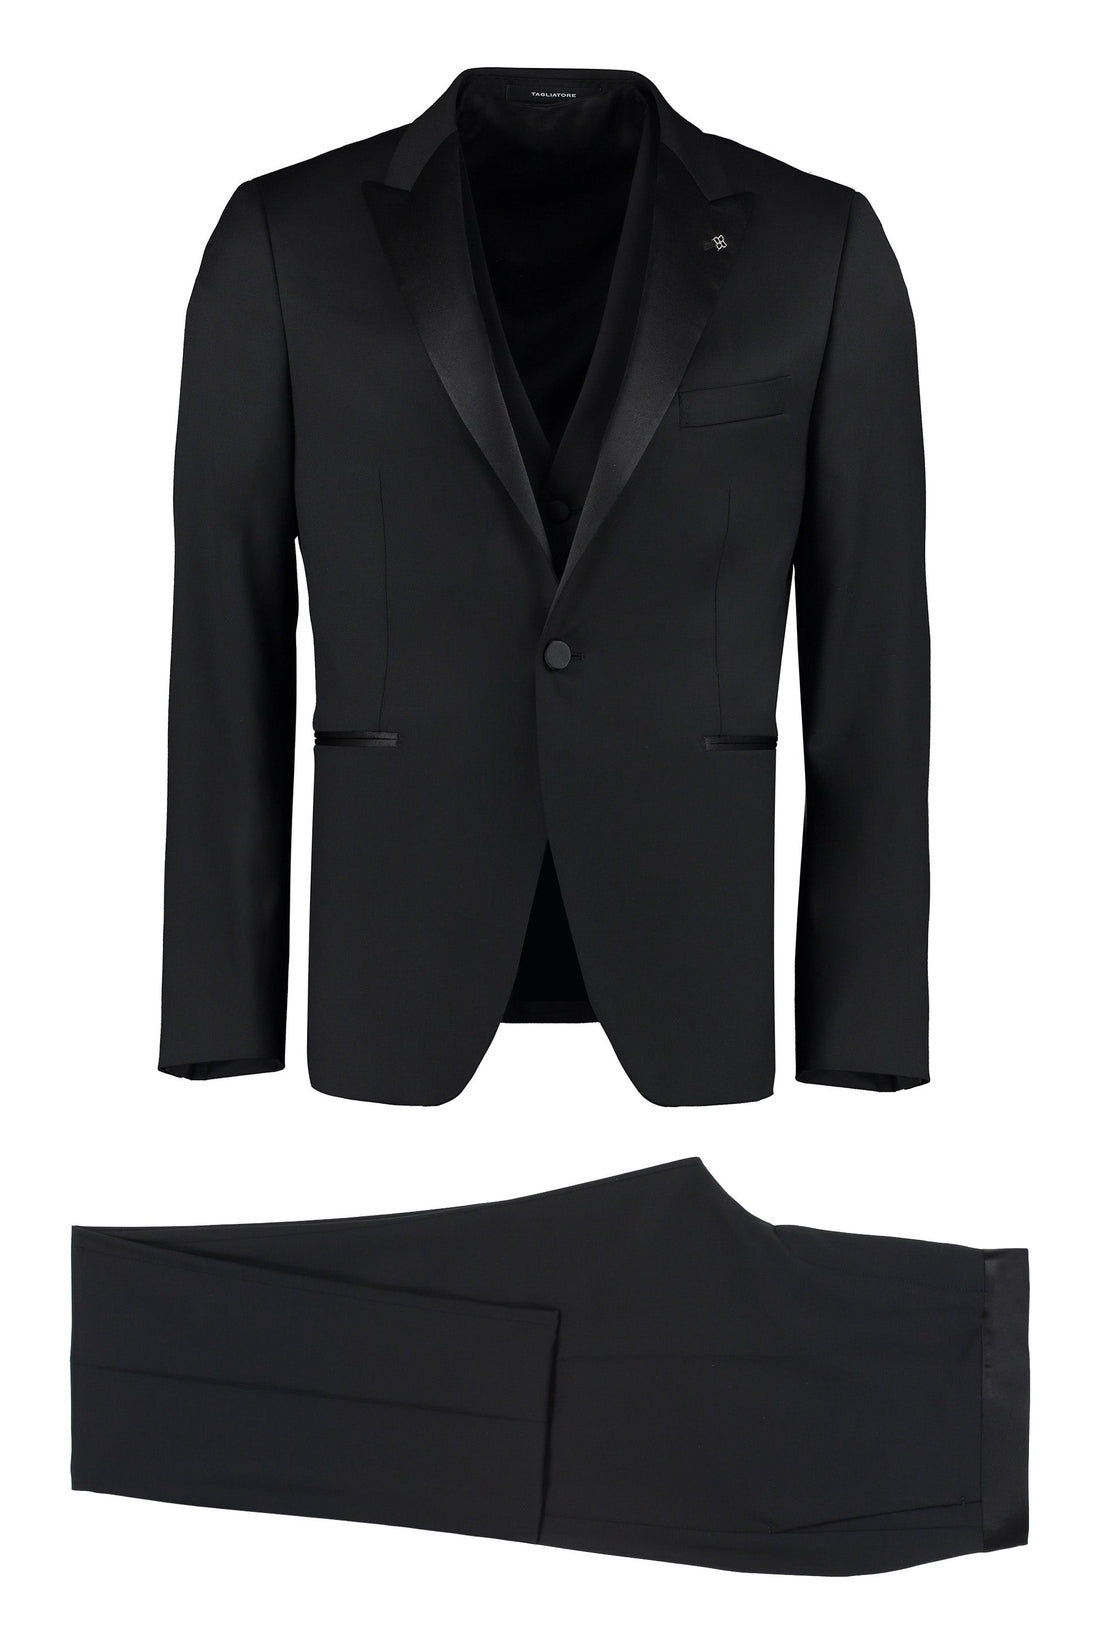 Tagliatore-OUTLET-SALE-Wool two-pieces suit-ARCHIVIST